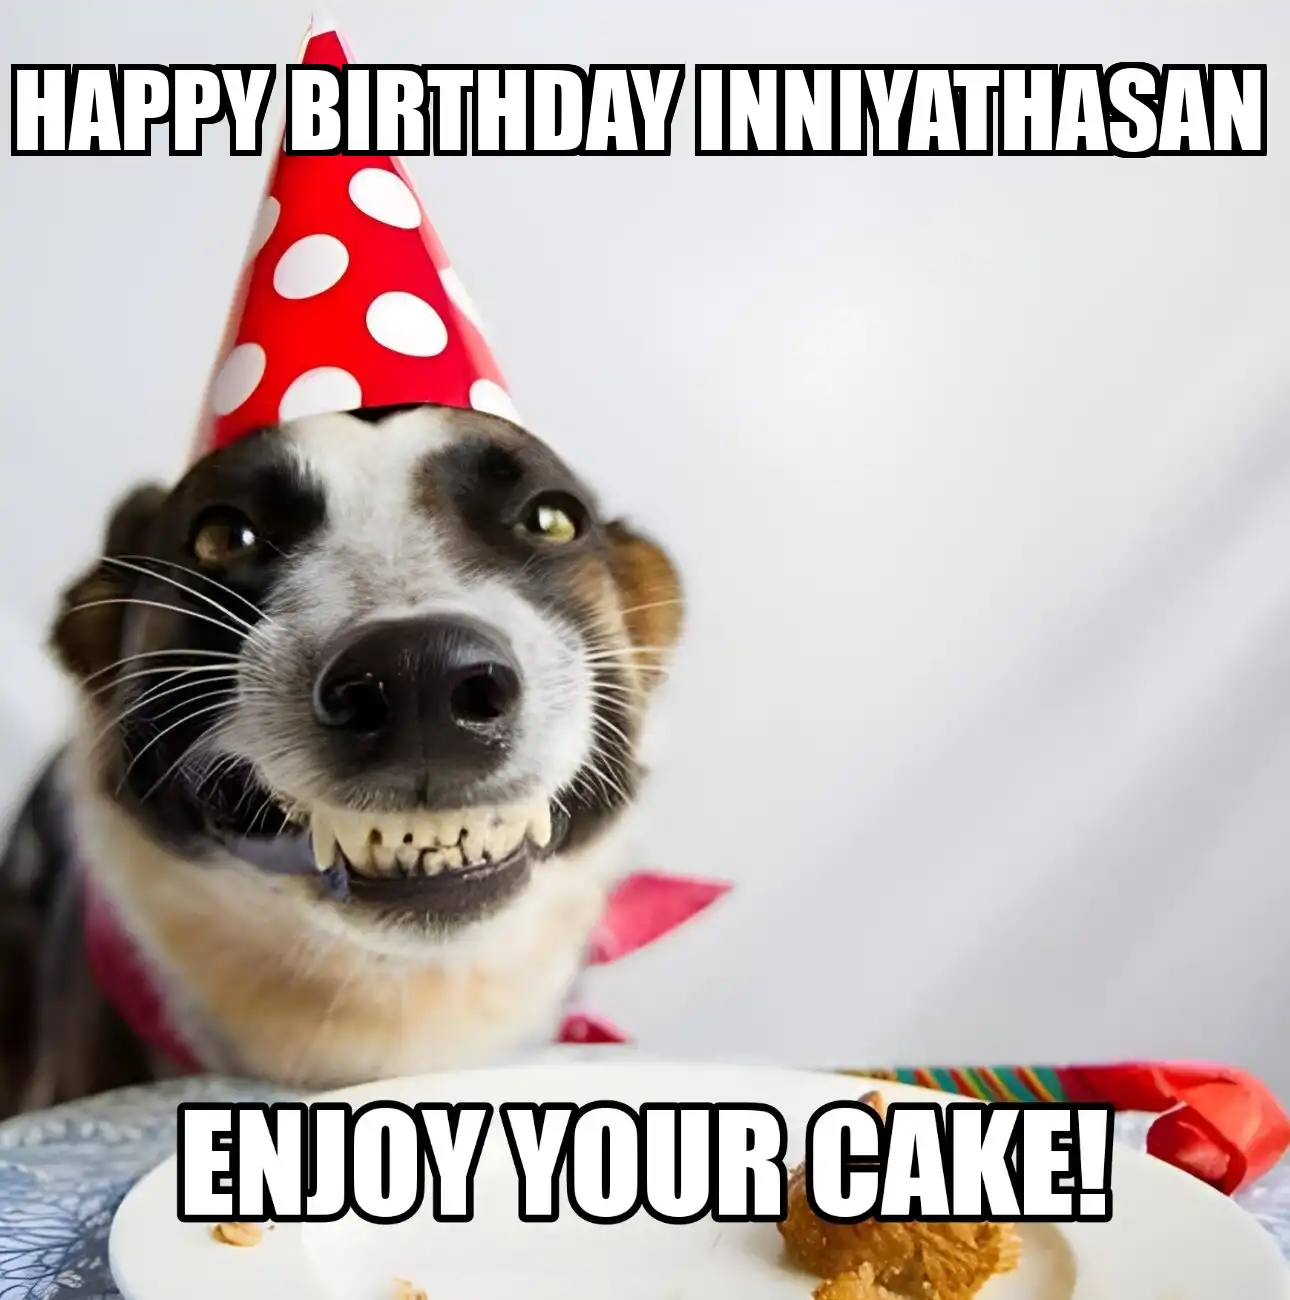 Happy Birthday Inniyathasan Enjoy Your Cake Dog Meme